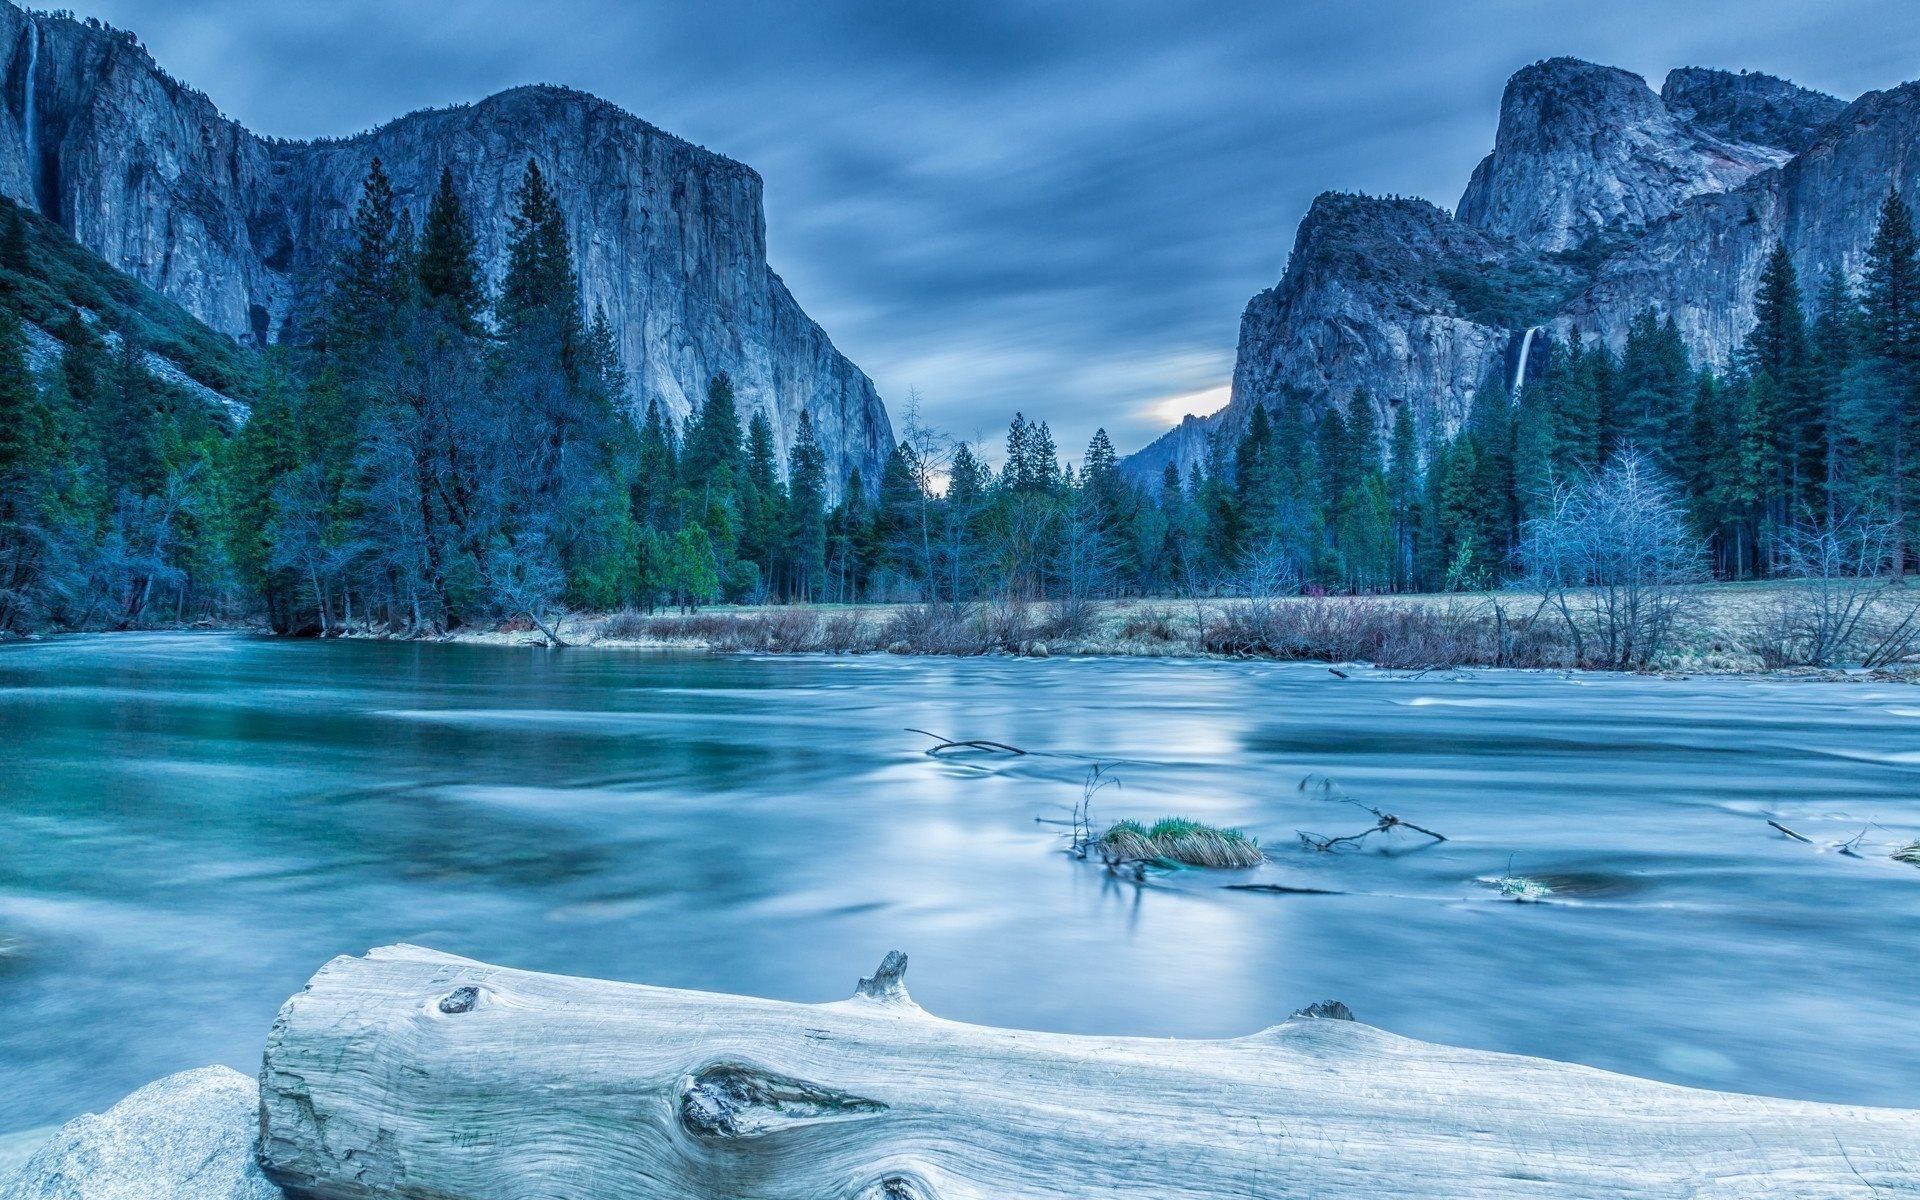 Download wallpaper Yosemite National Park, America, winter